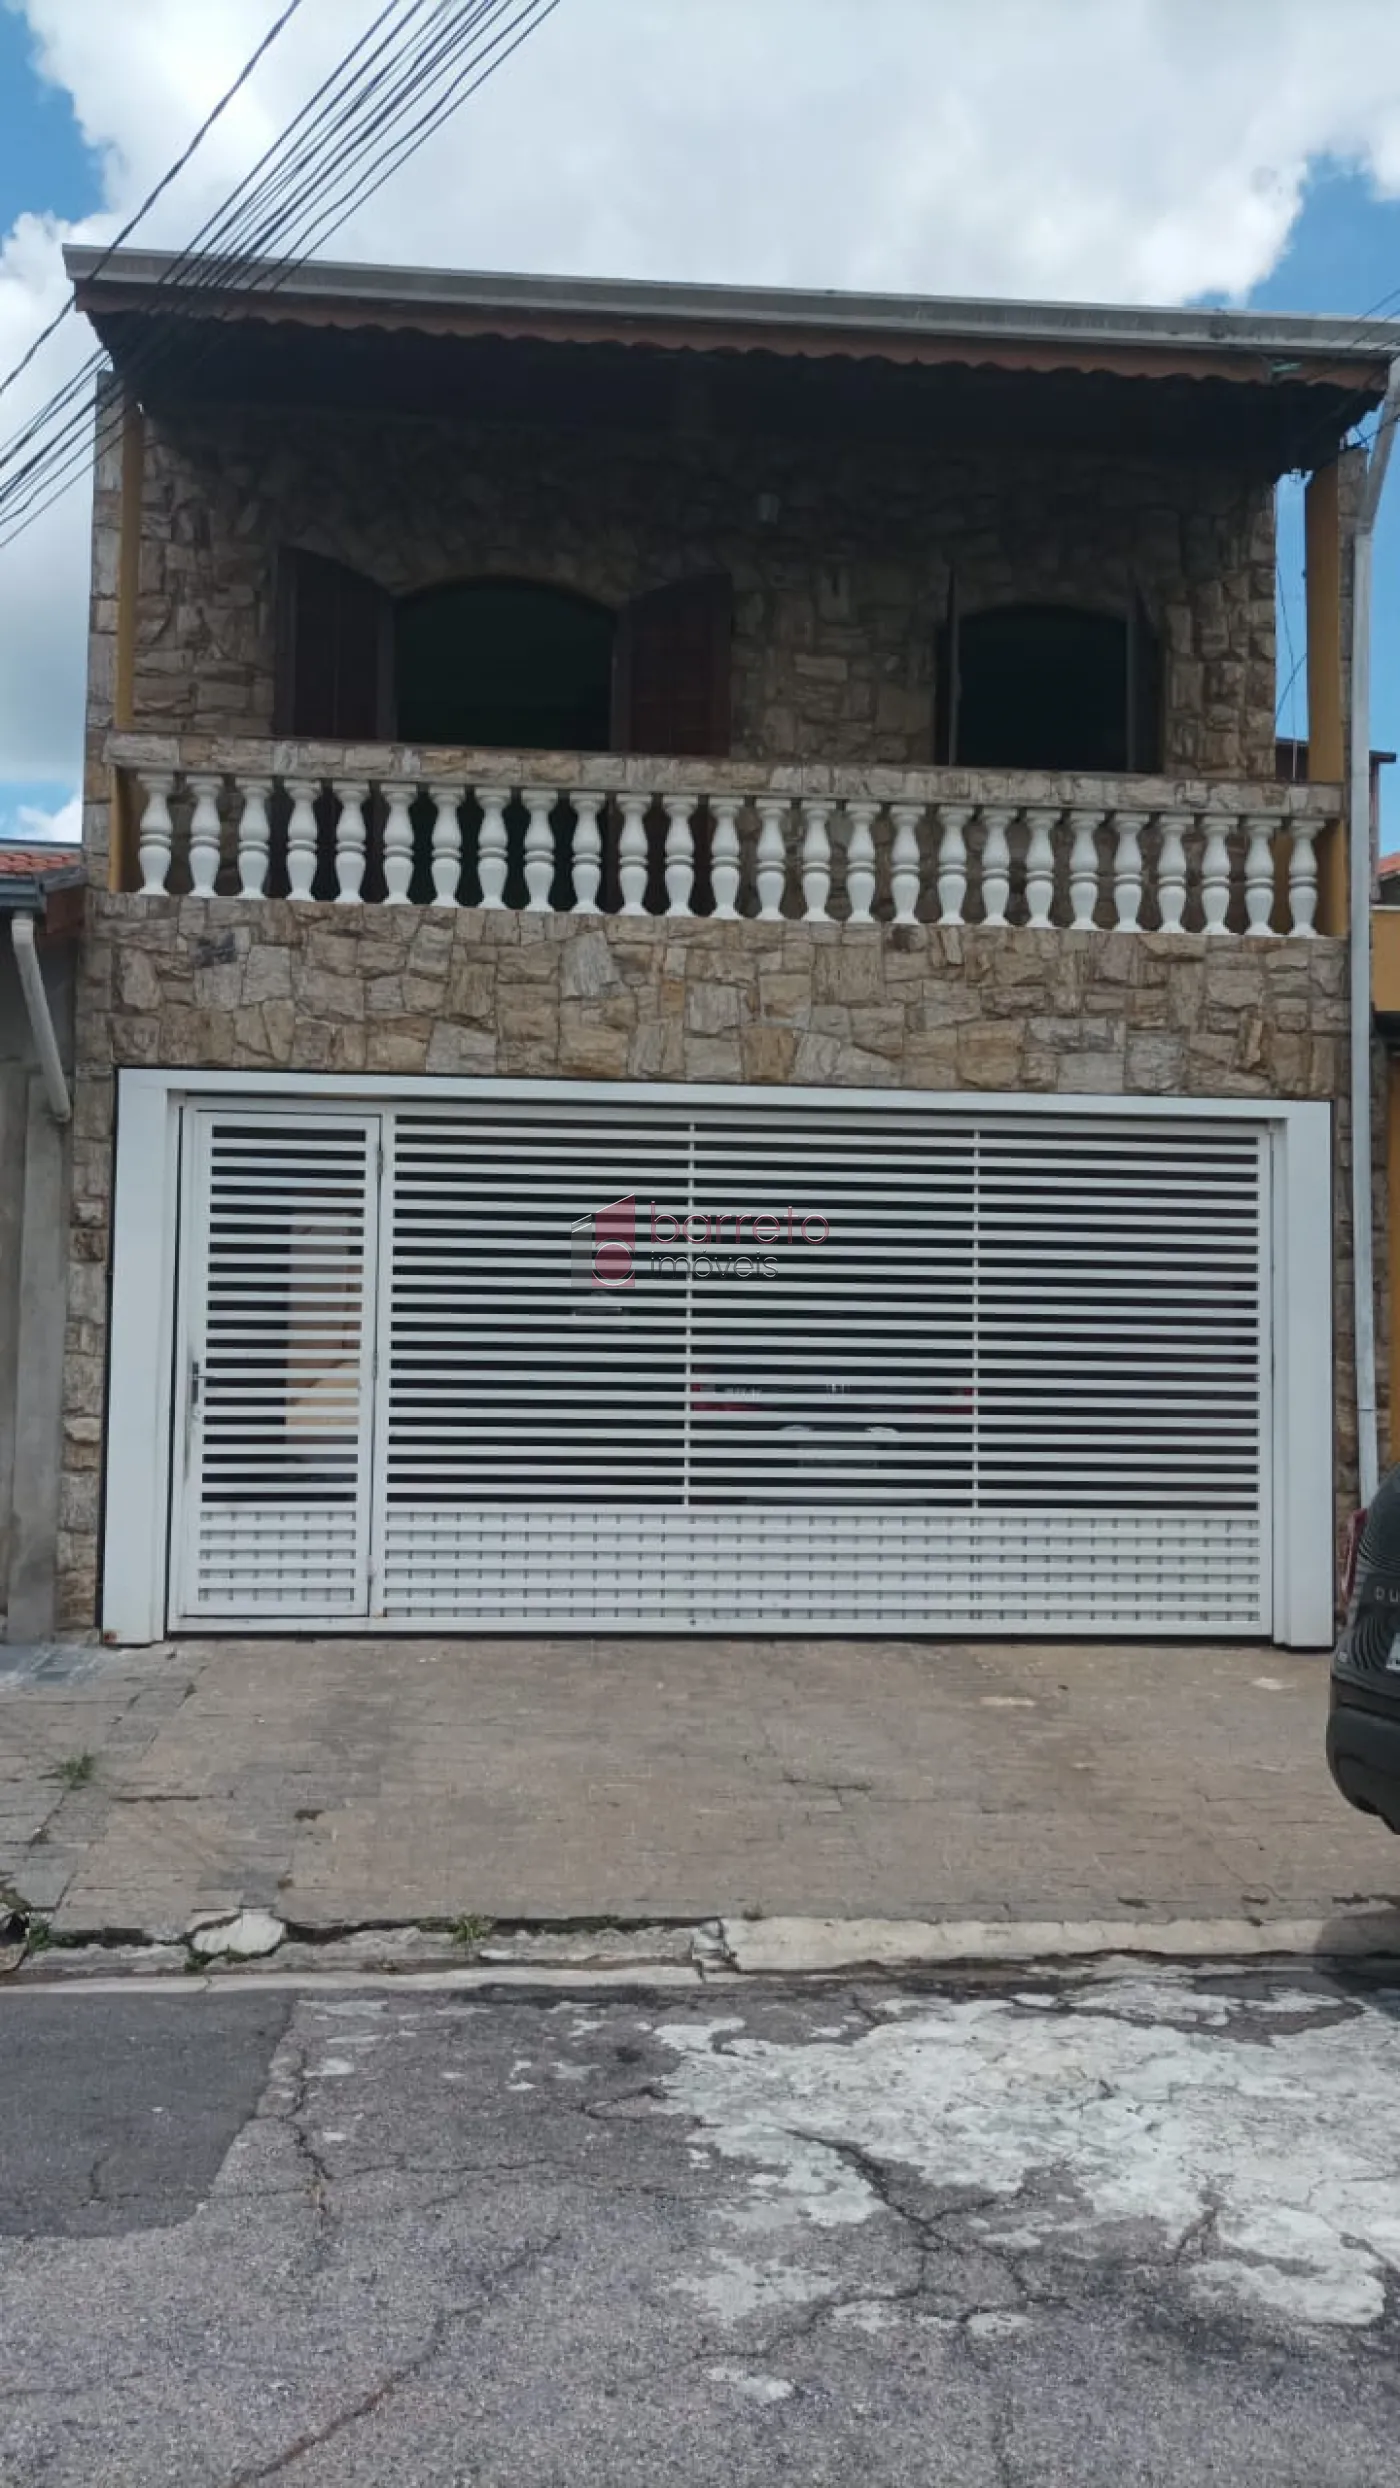 Alugar Casa / Padrão em Jundiaí R$ 2.900,00 - Foto 1